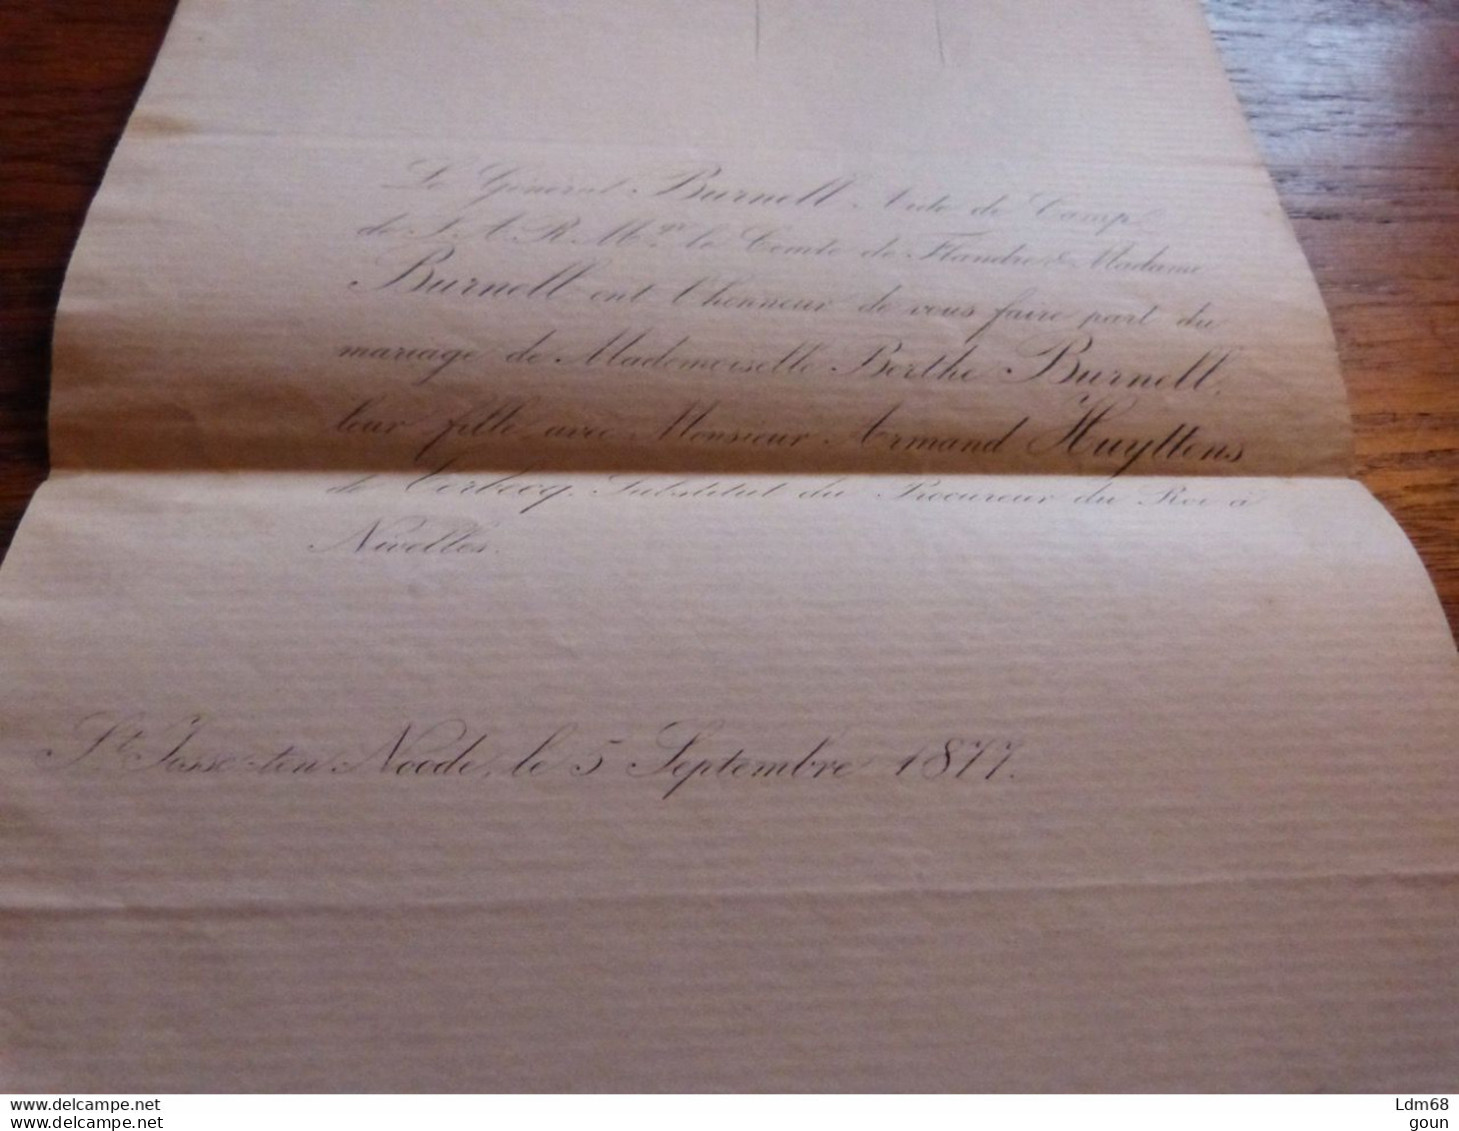 I35 Invitation Mariage Berthe Burnell Armand Huyttens De Terbecq Sub. Proc Du Roi Nivelles - 1877 - Mariage